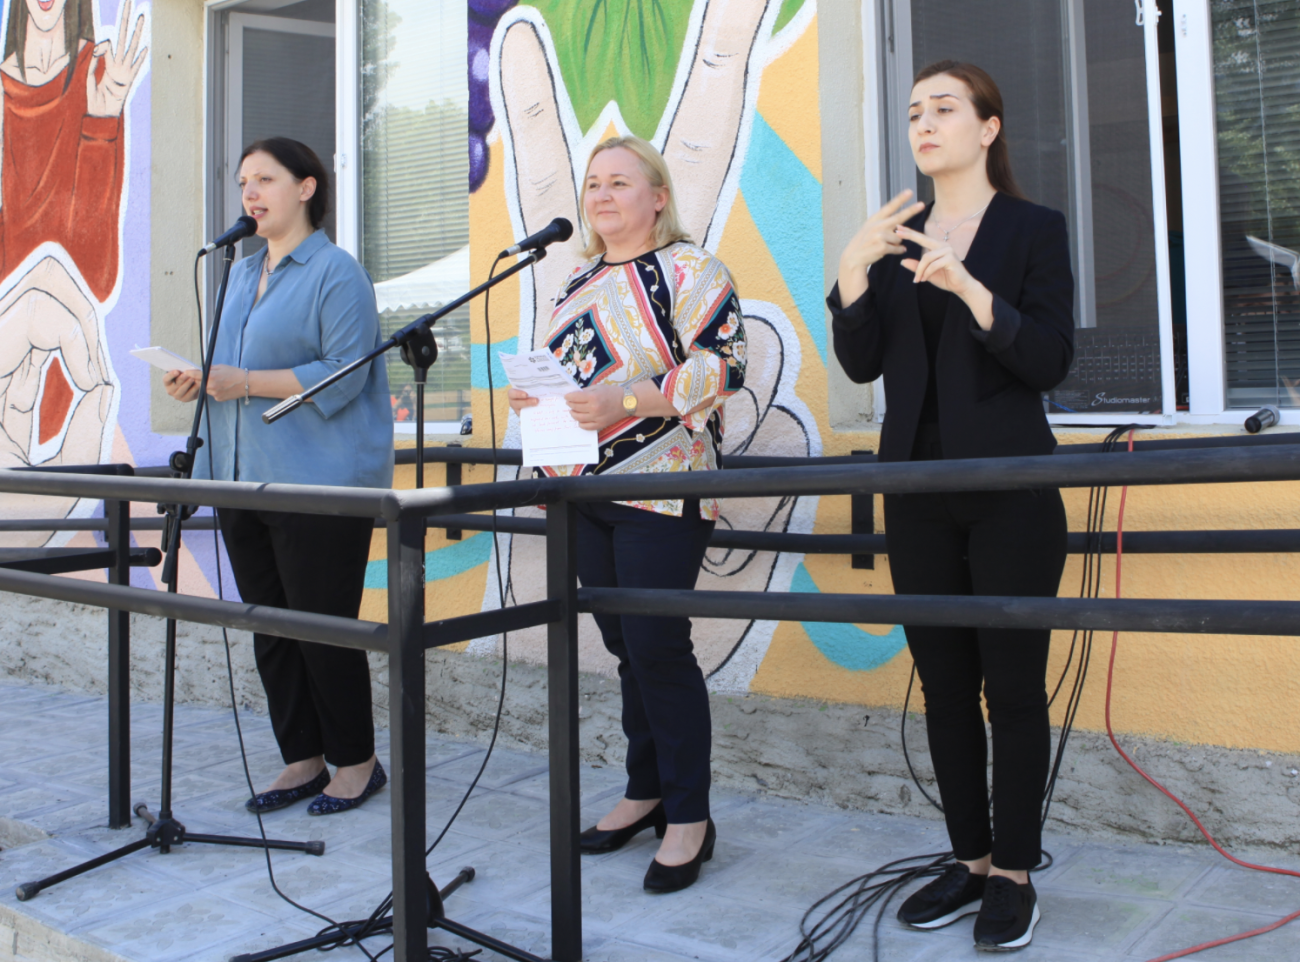 Tres mujeres están de pie frente a un edificio decorado con muchos colores. Una mujer, vestida de negro, en el extremo está traduciendo el discurso al lenguaje de signos.